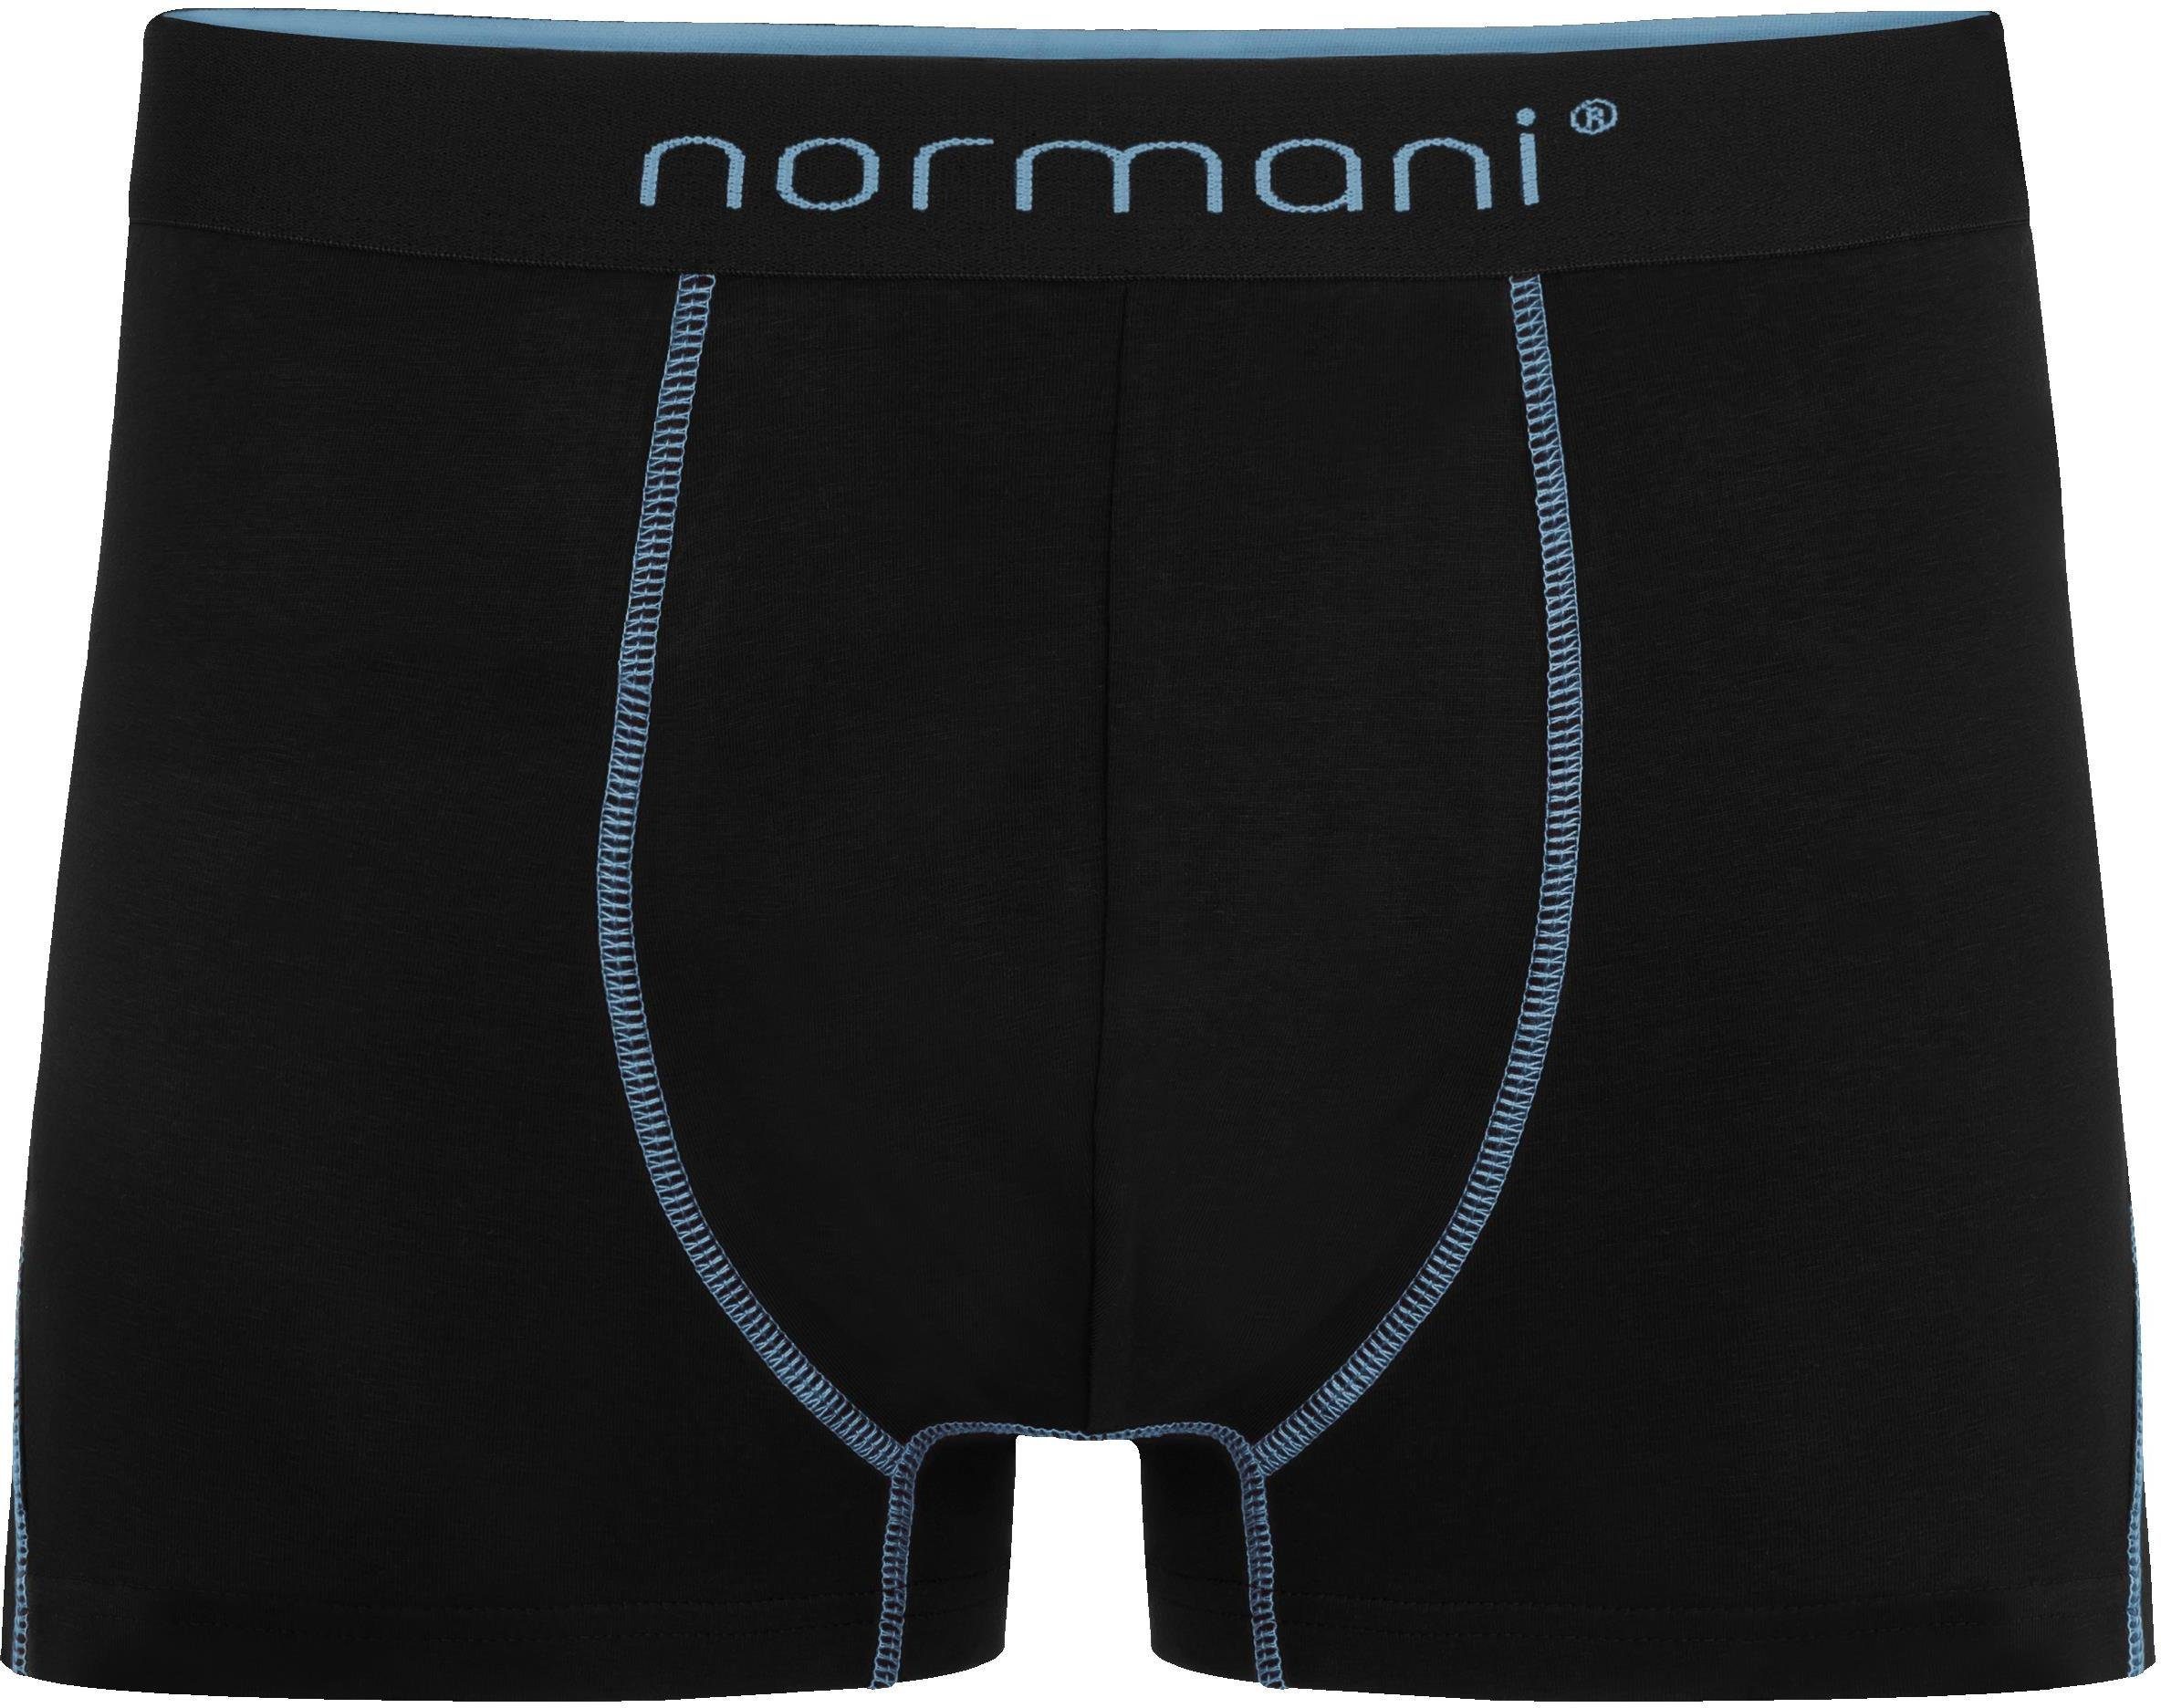 Hellblau Herren Baumwolle für Männer normani atmungsaktiver 6 Baumwoll-Boxershorts aus Boxershorts Unterhose